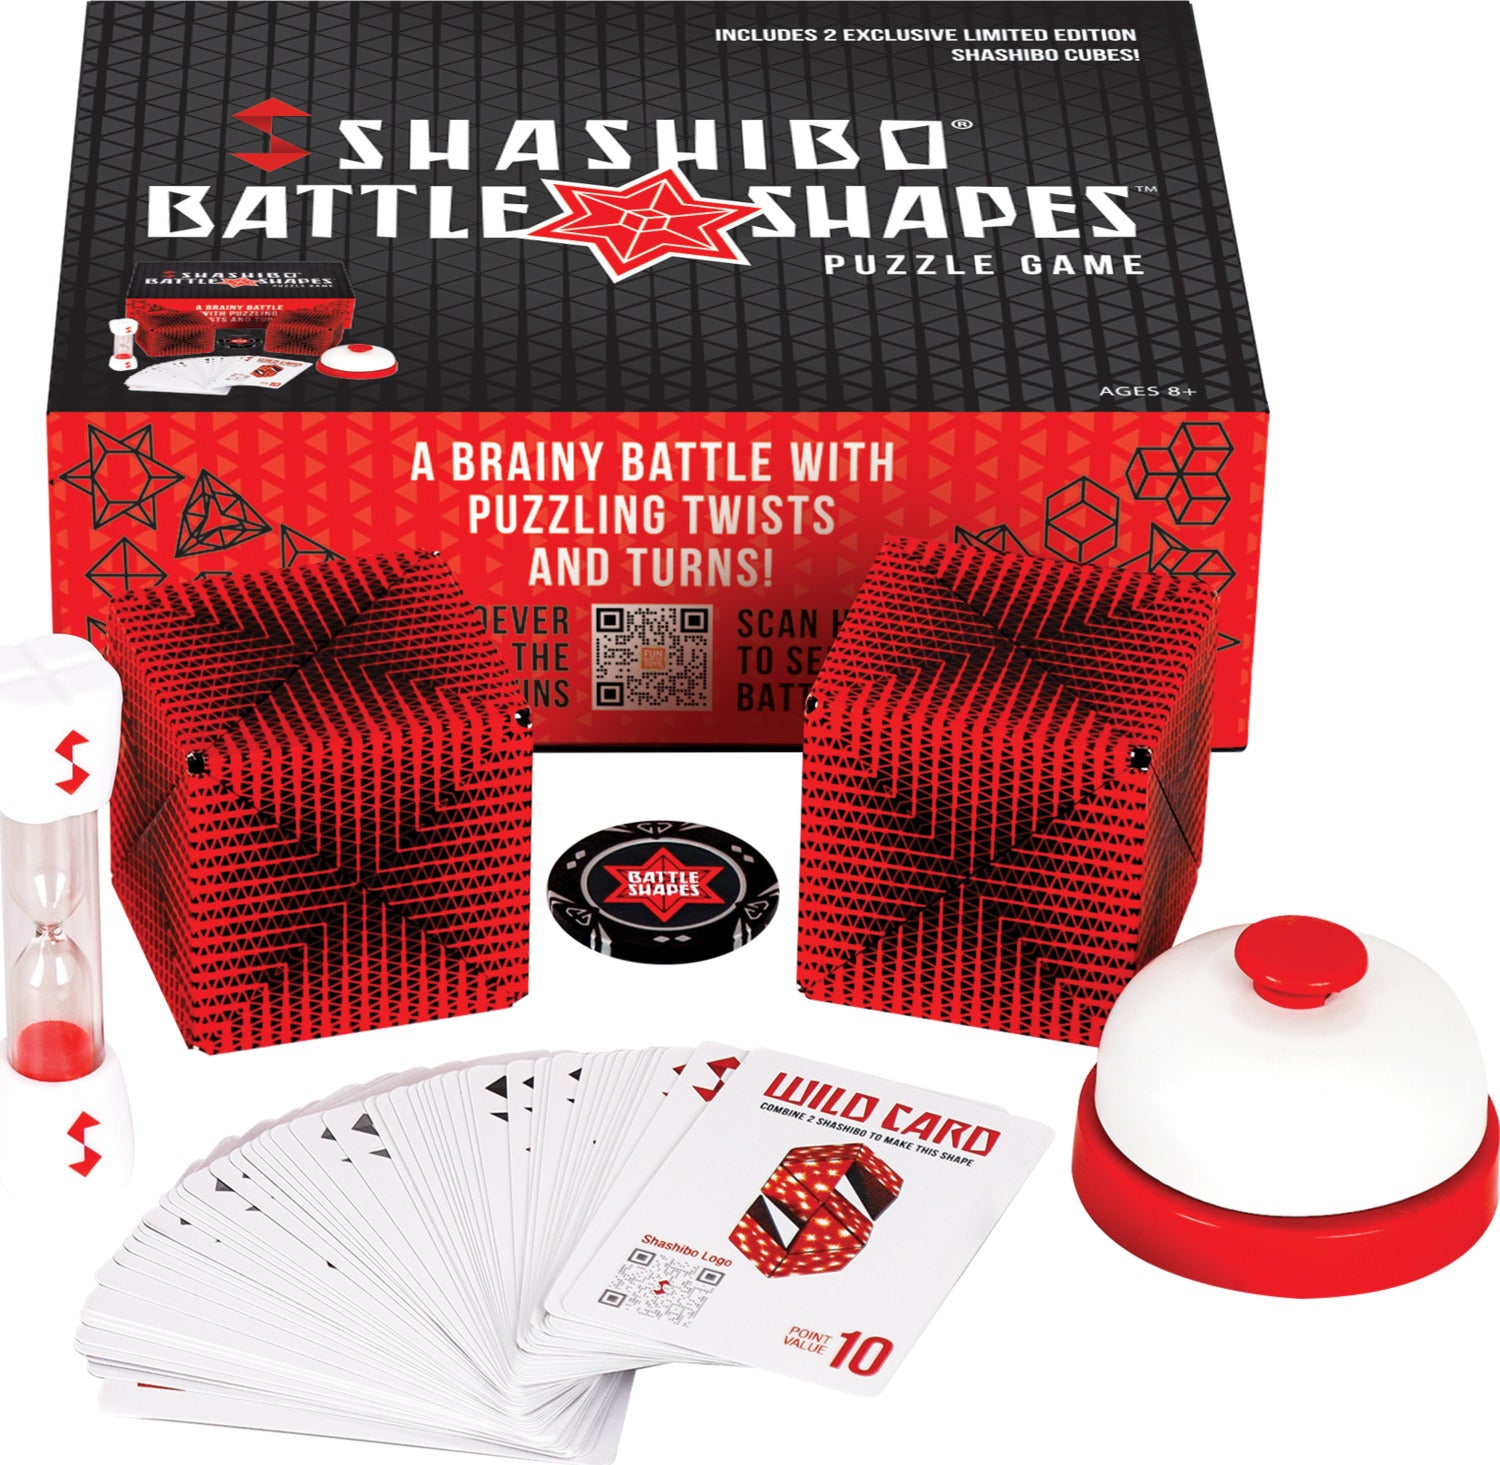 Shashibo Battle Shapes 2-pack